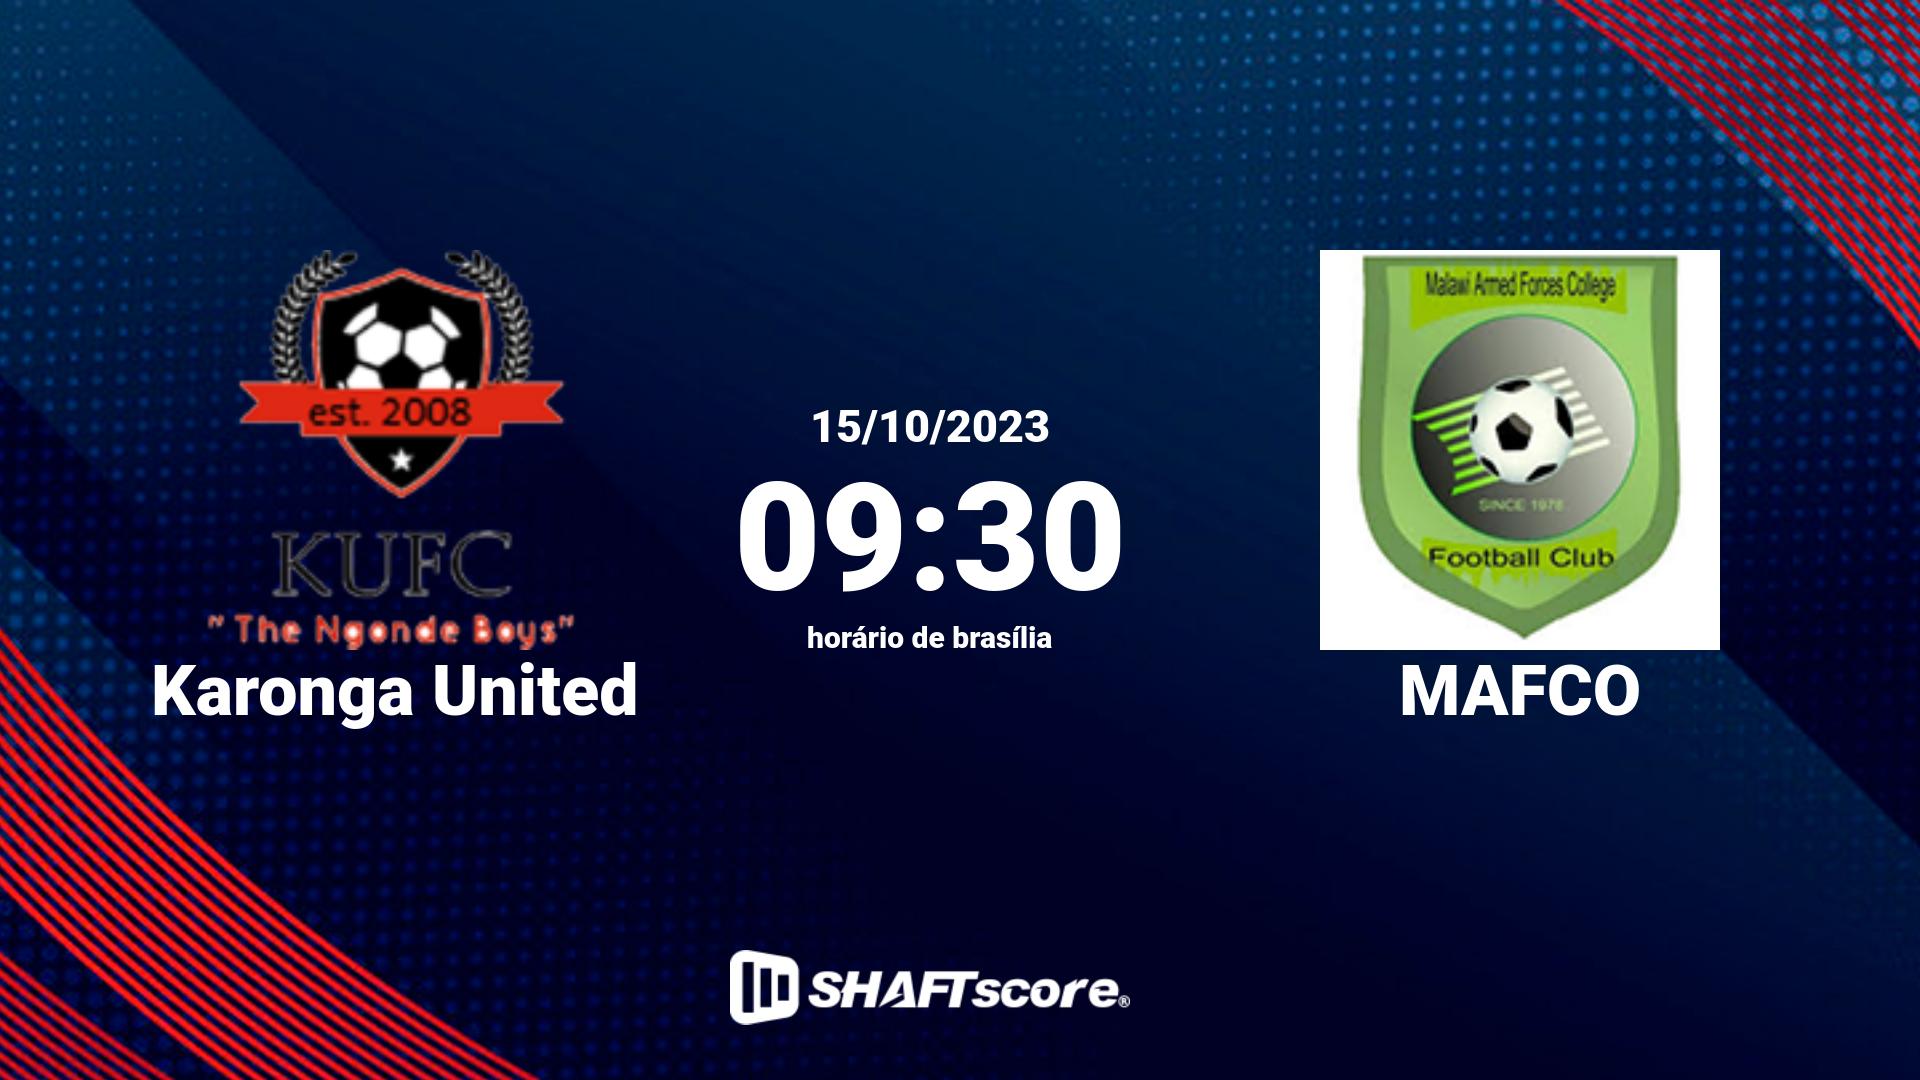 Estatísticas do jogo Karonga United vs MAFCO 15.10 09:30